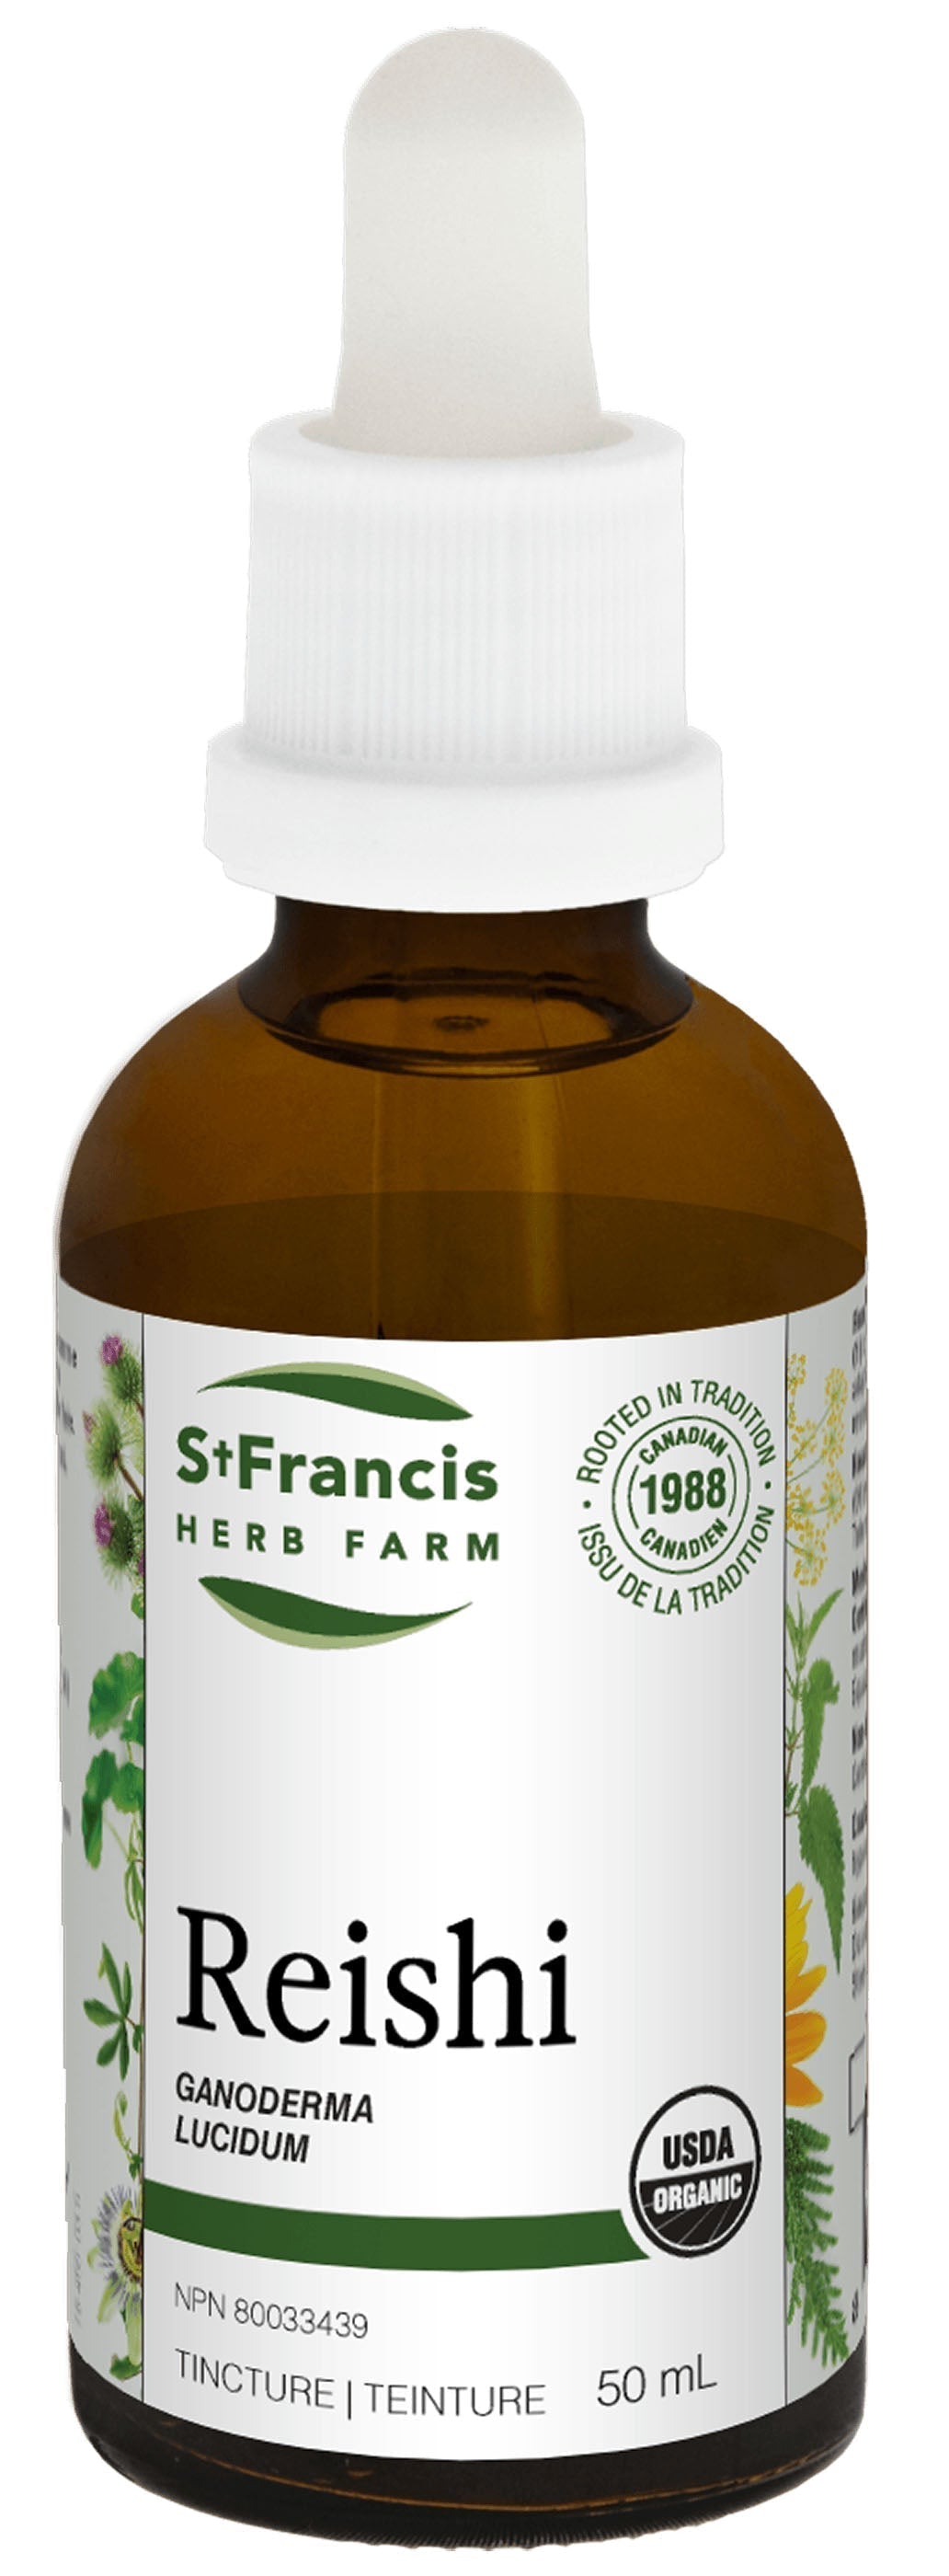 ST FRANCIS HERB FARM Reishi Mushroom (50 ml)